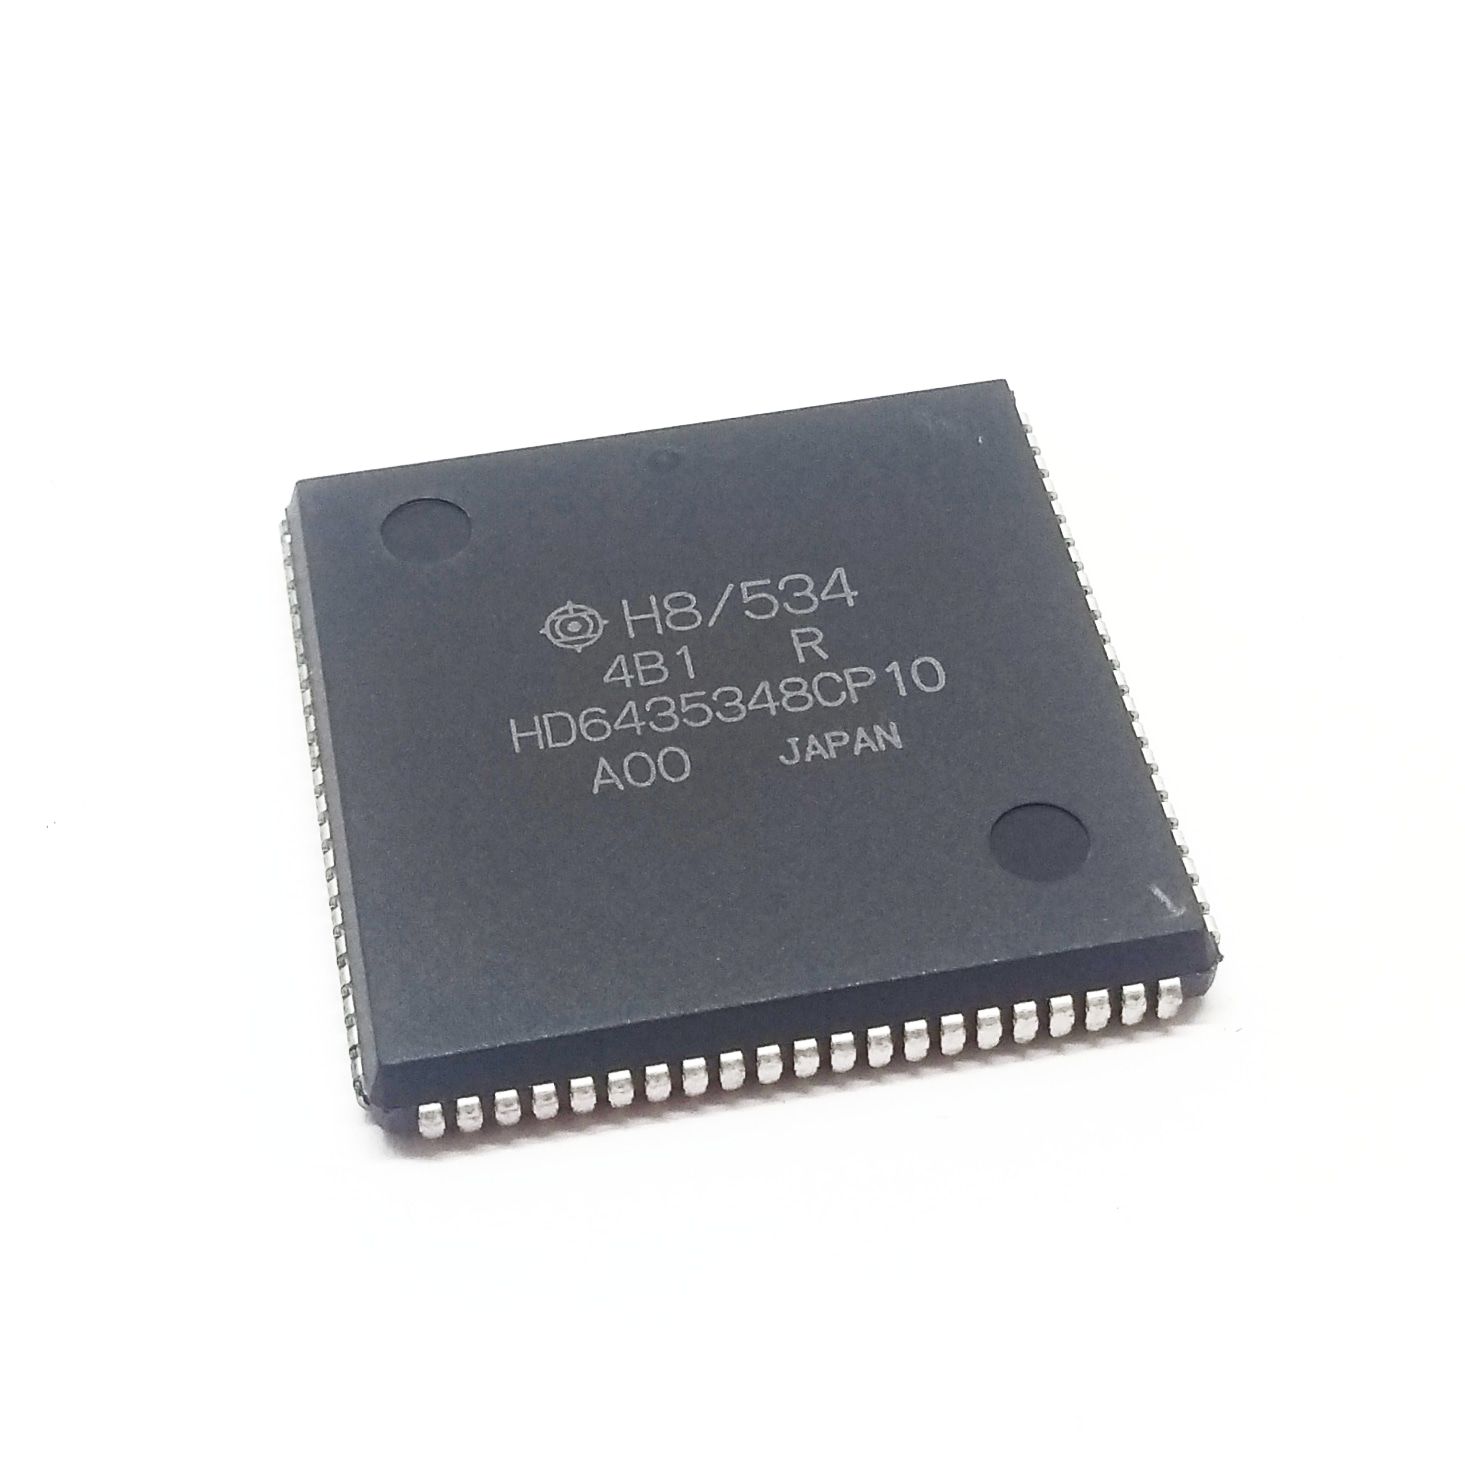 Circuito Integrado HD6435348CP10 SMD PLCC-84 - Hitachi